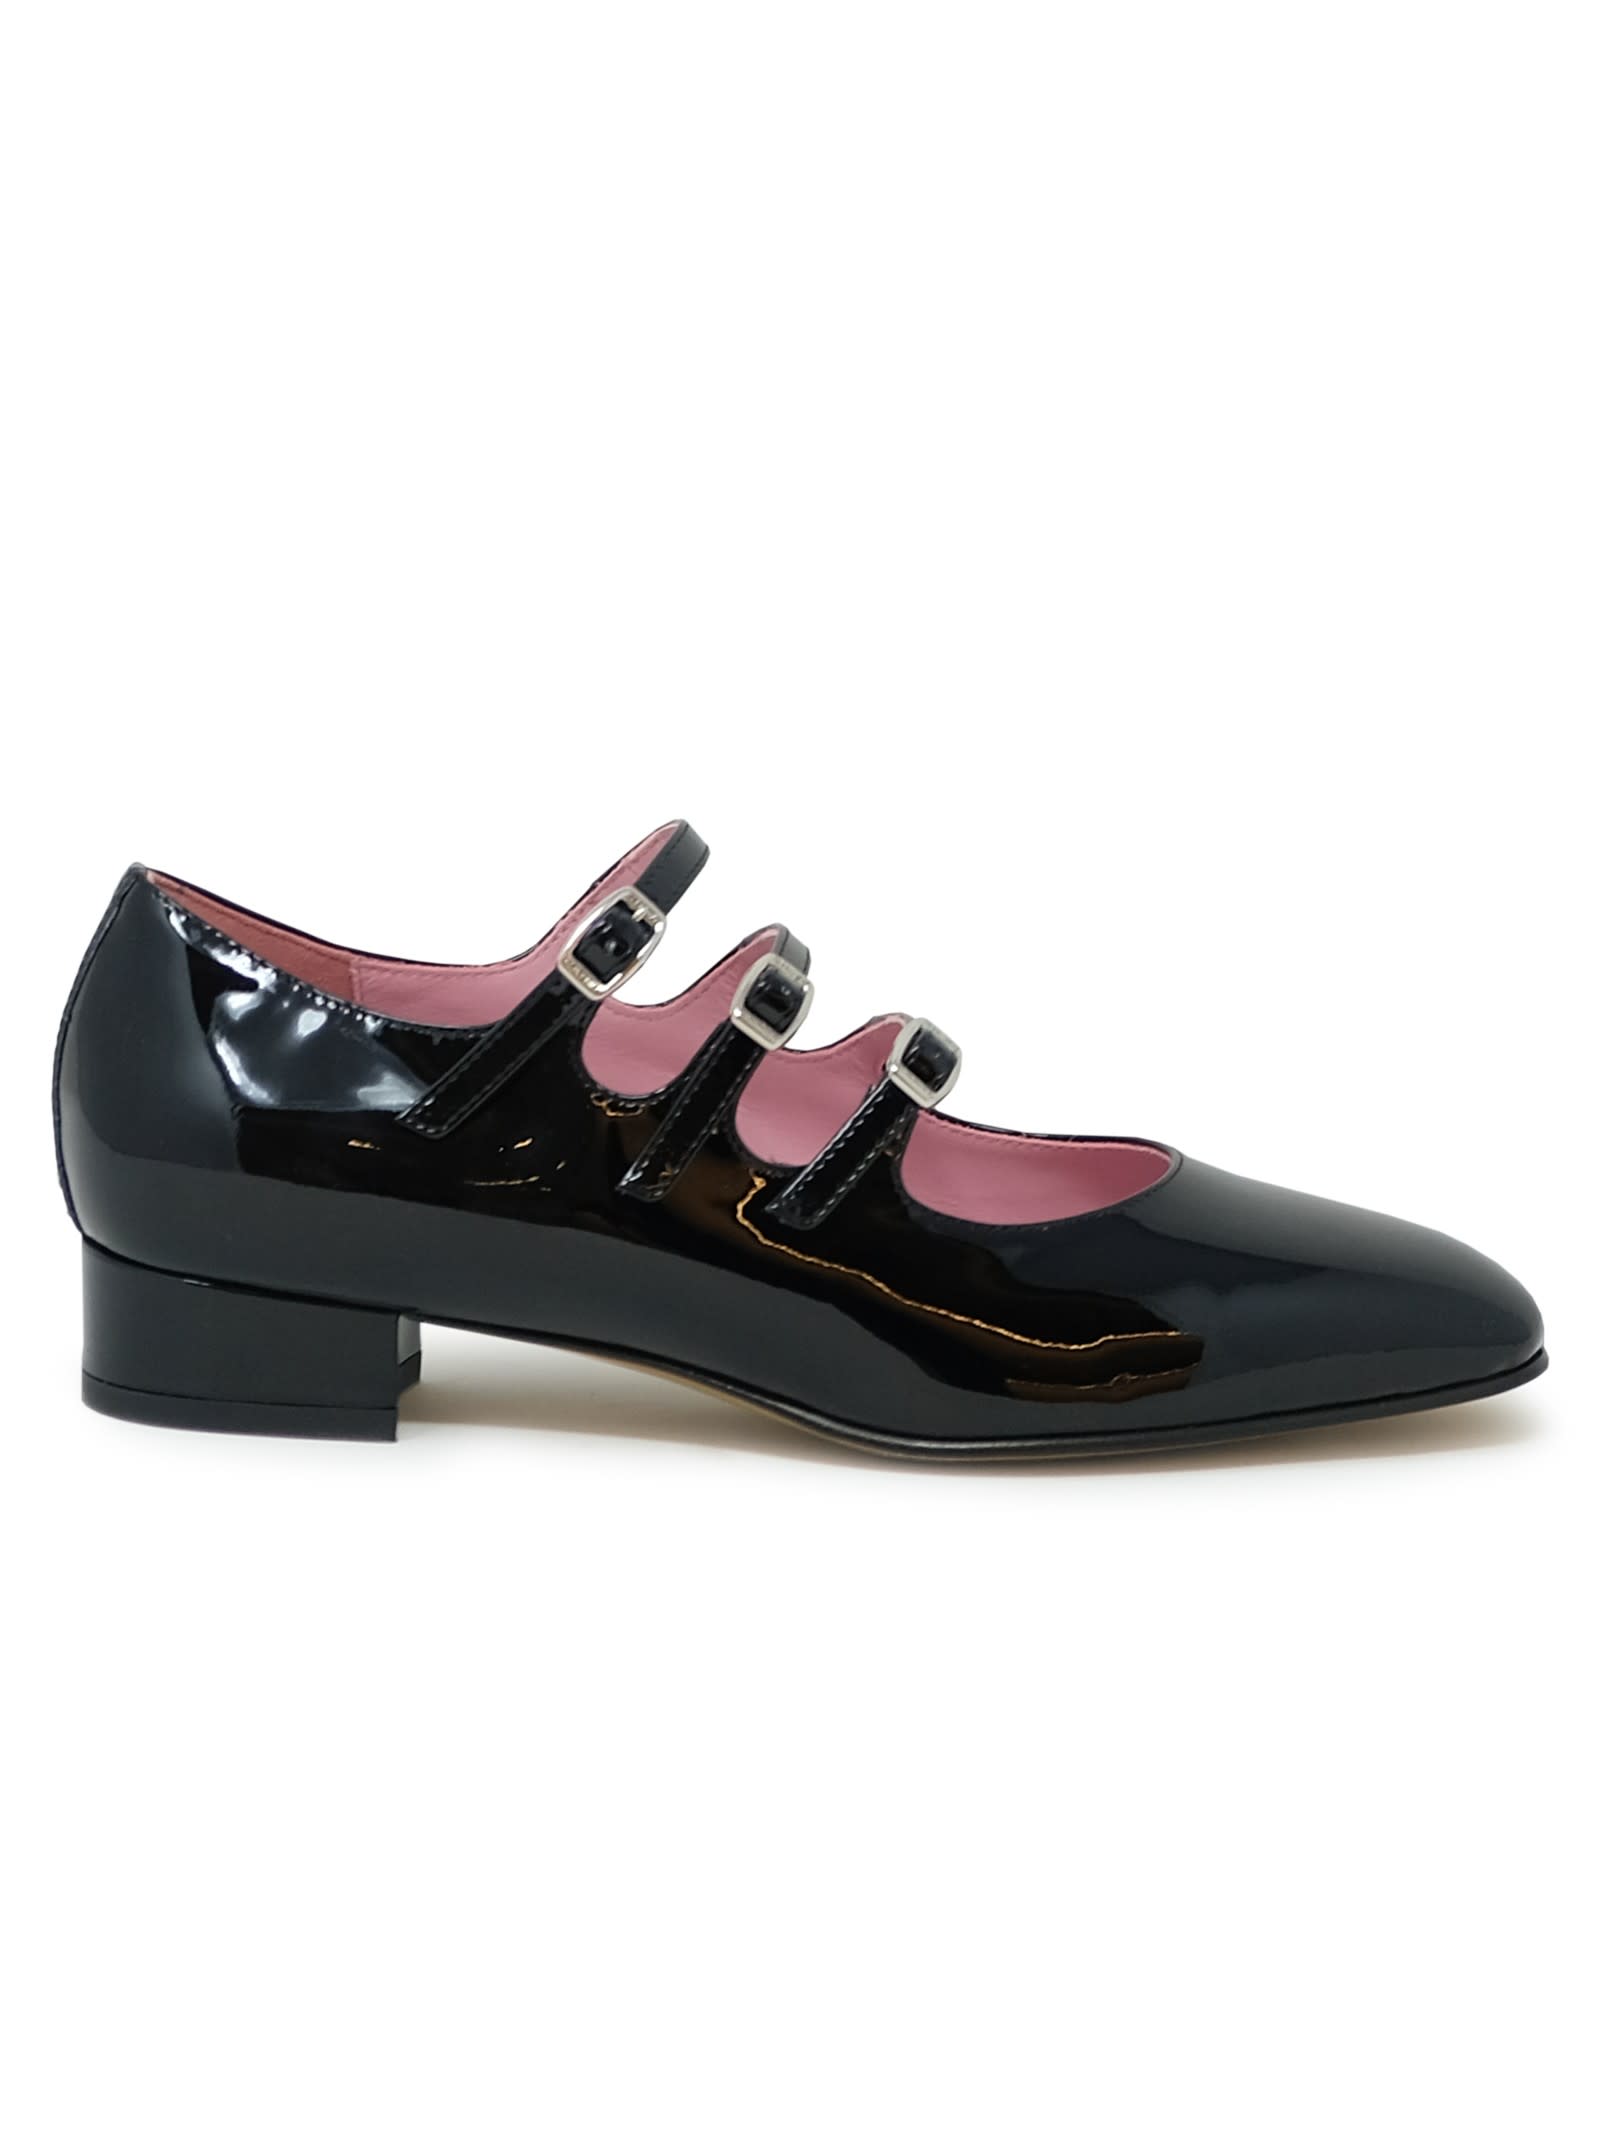 Carel Paris Black Patent Leather Ballet Shoes